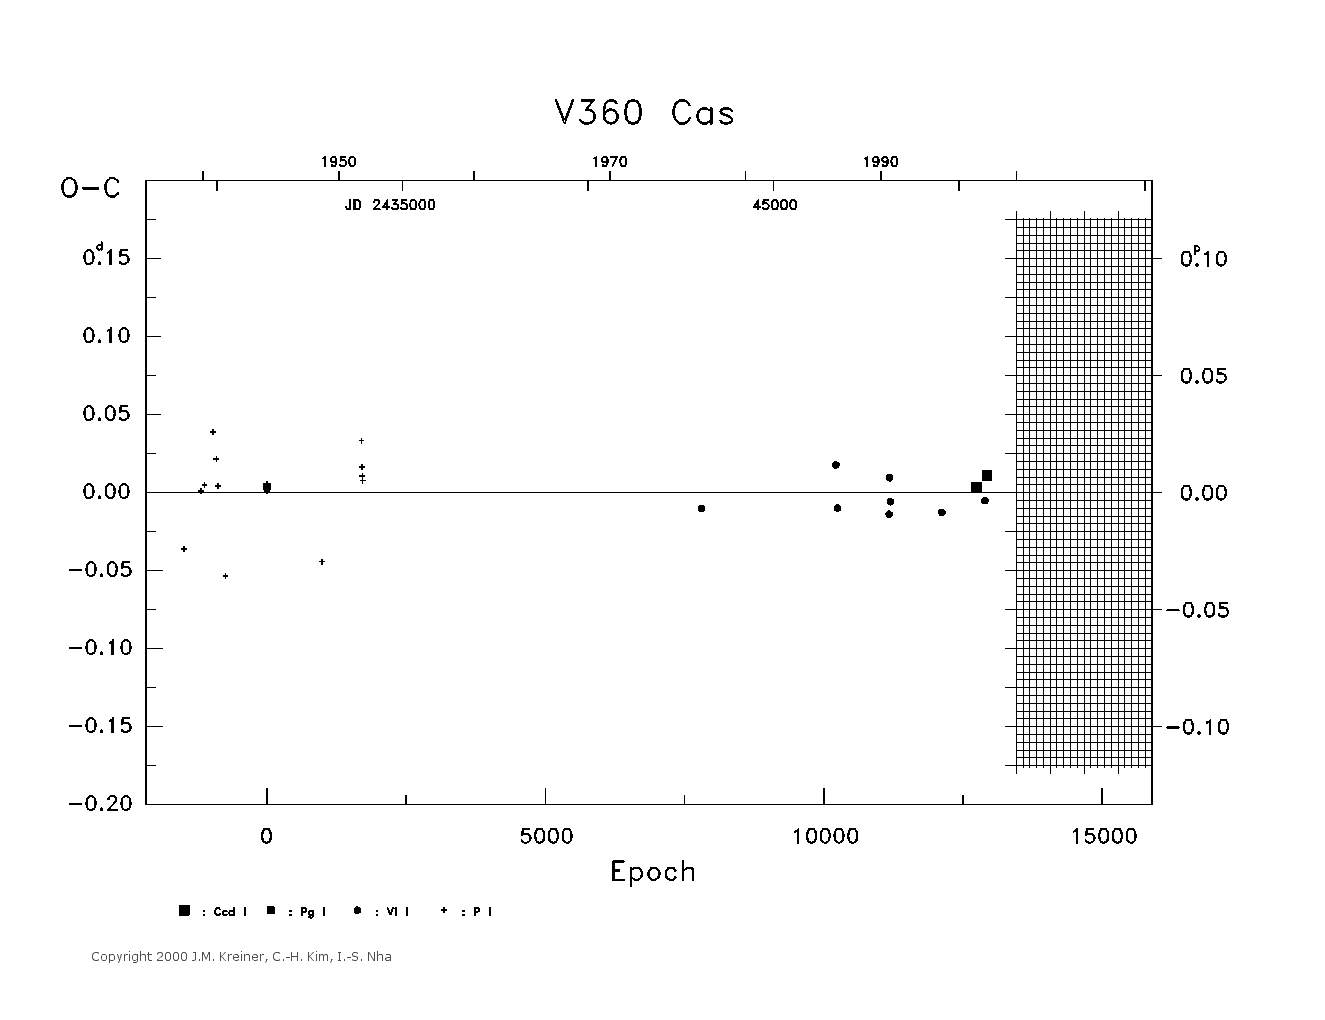 [IMAGE: large V360 CAS O-C diagram]